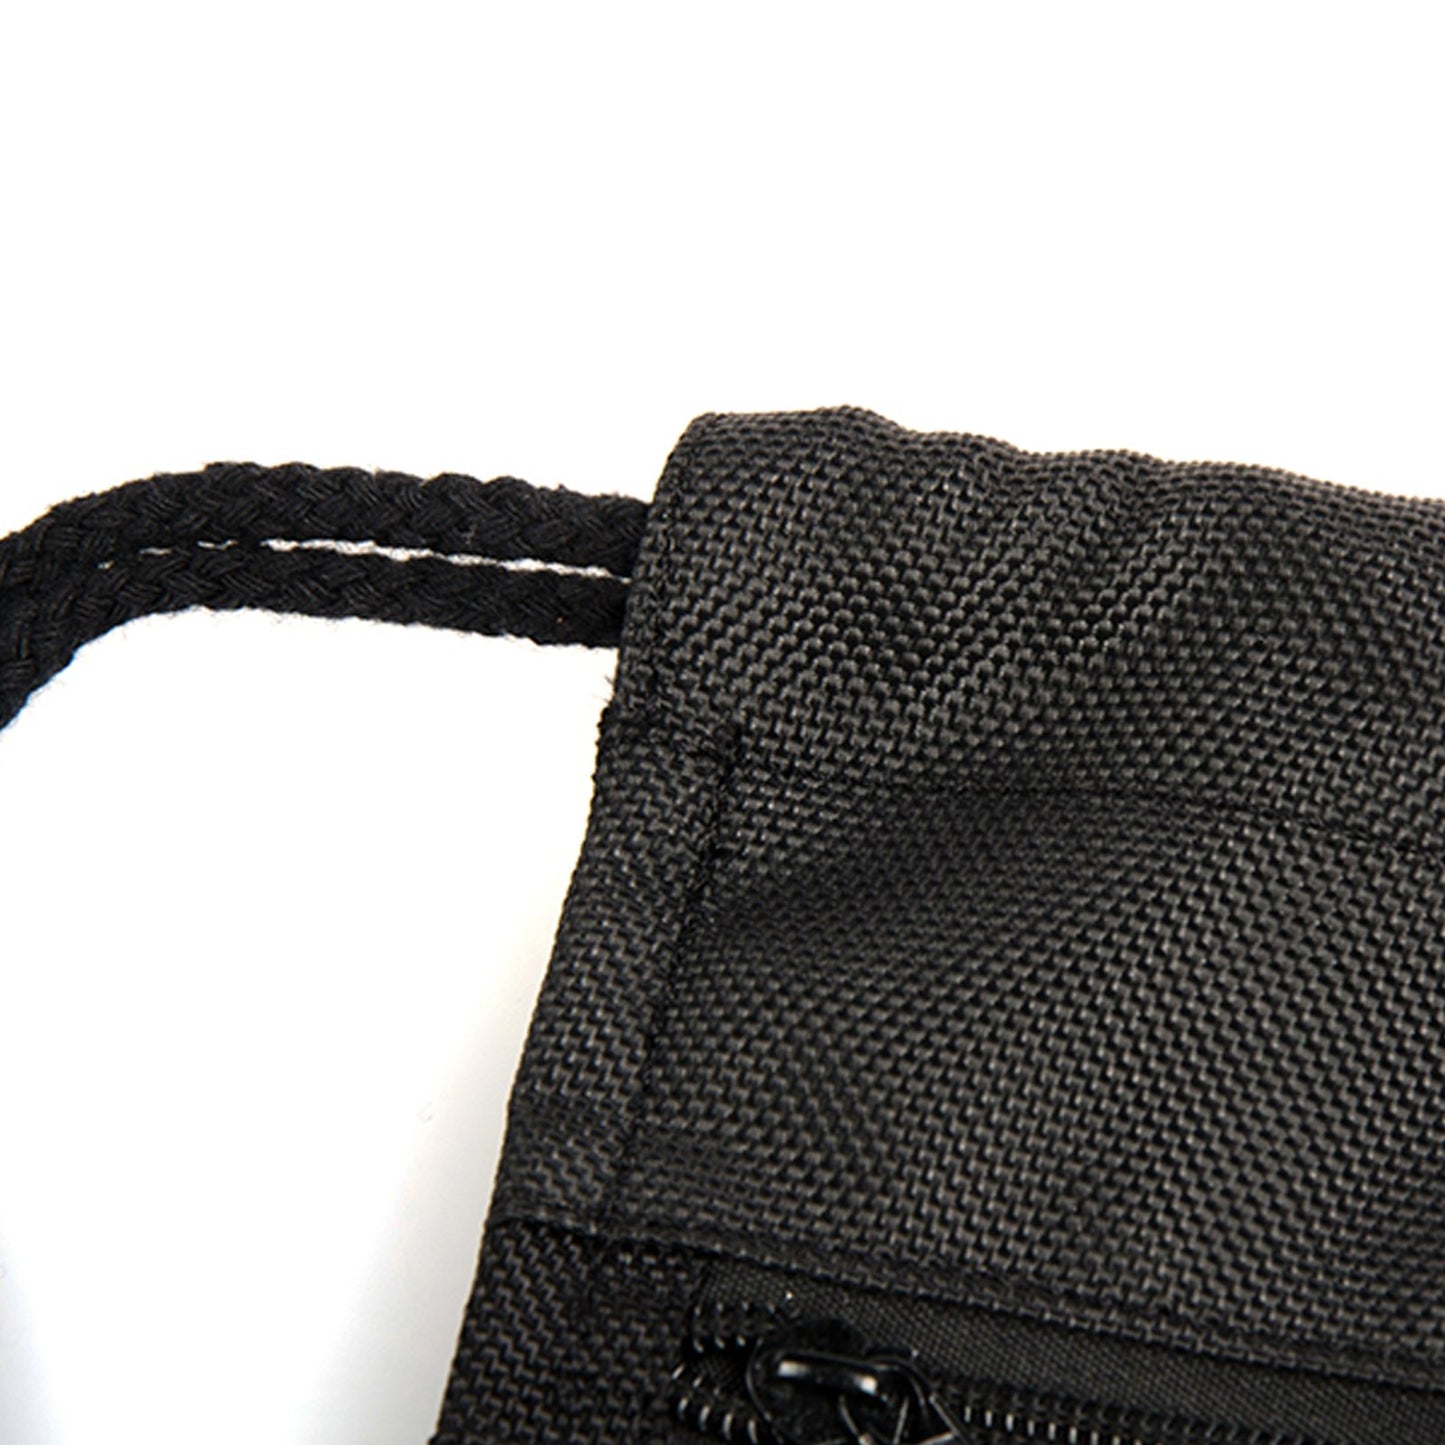 Personalisierter Rentier-Rucksack mit grünem Blatt und Namen, schwarzem Kordelzug